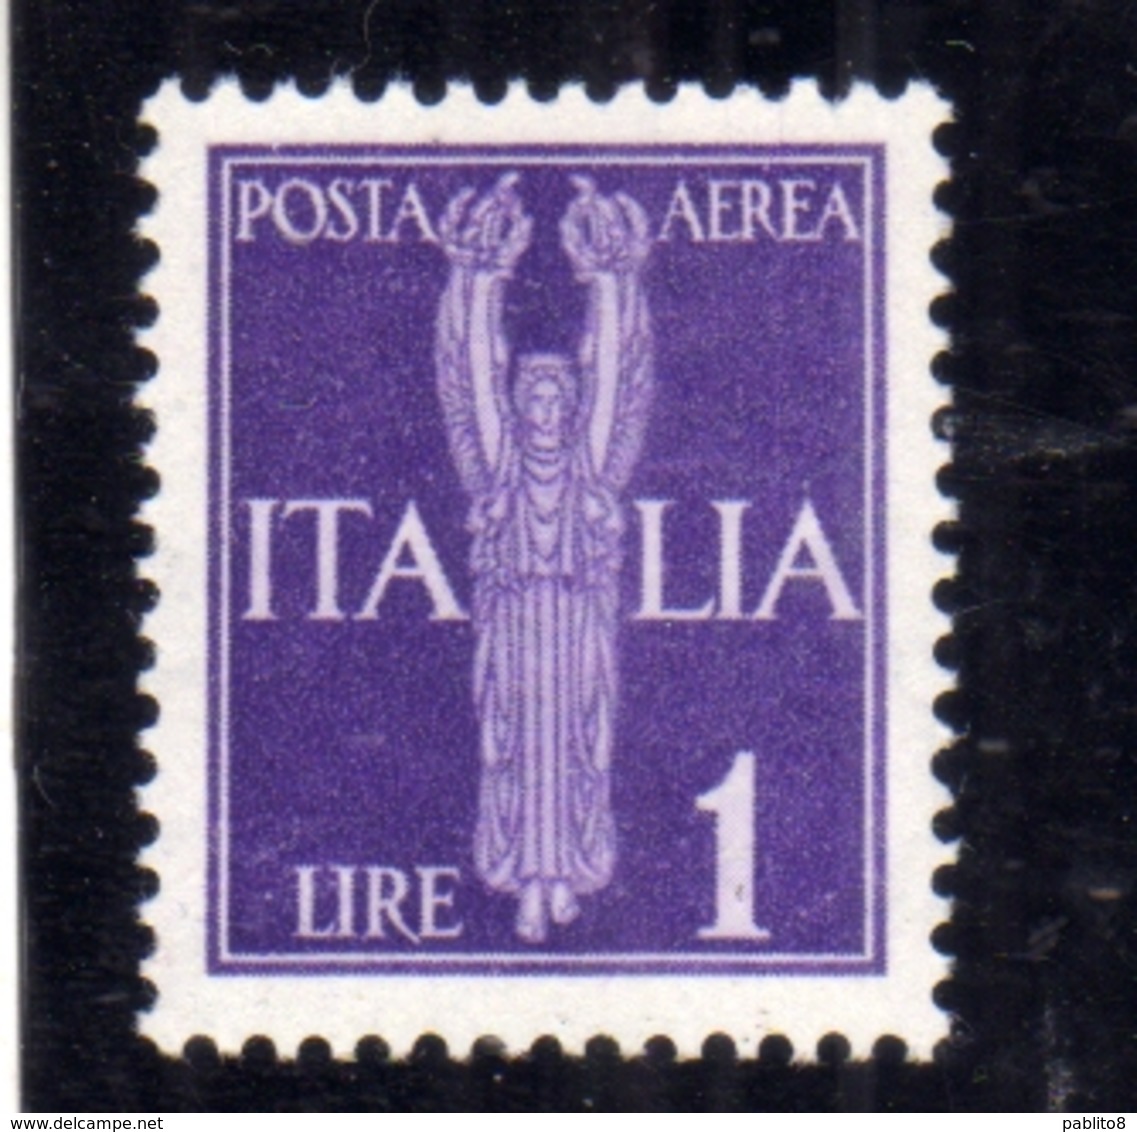 ITALIA REGNO ITALY KINGDOM 1944 REPUBBLICA SOCIALE ITALIANA RSI GNR POSTA AEREA AIR MAIL LIRE 1 MNH OTTIMA CENTRATURA - Luchtpost